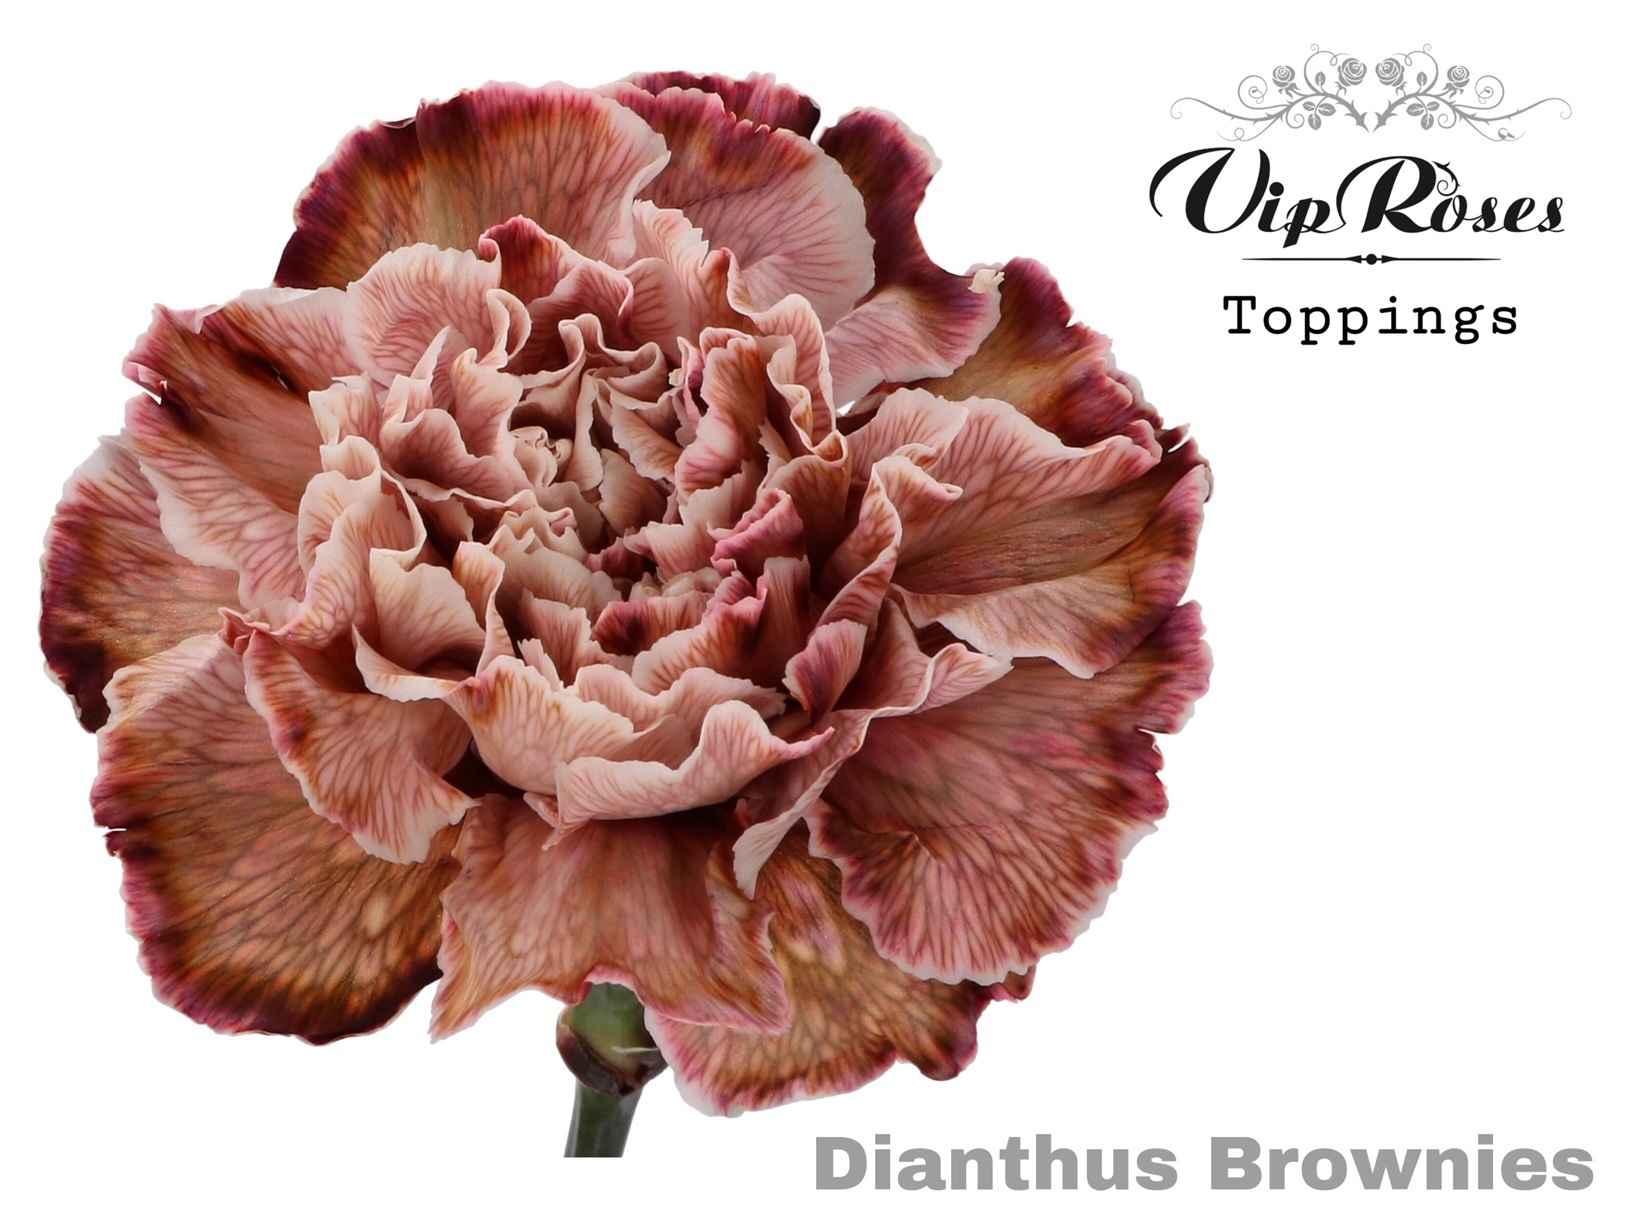 Срезанные цветы оптом Dianthus st paint brownies от 40шт из Голландии с доставкой по России